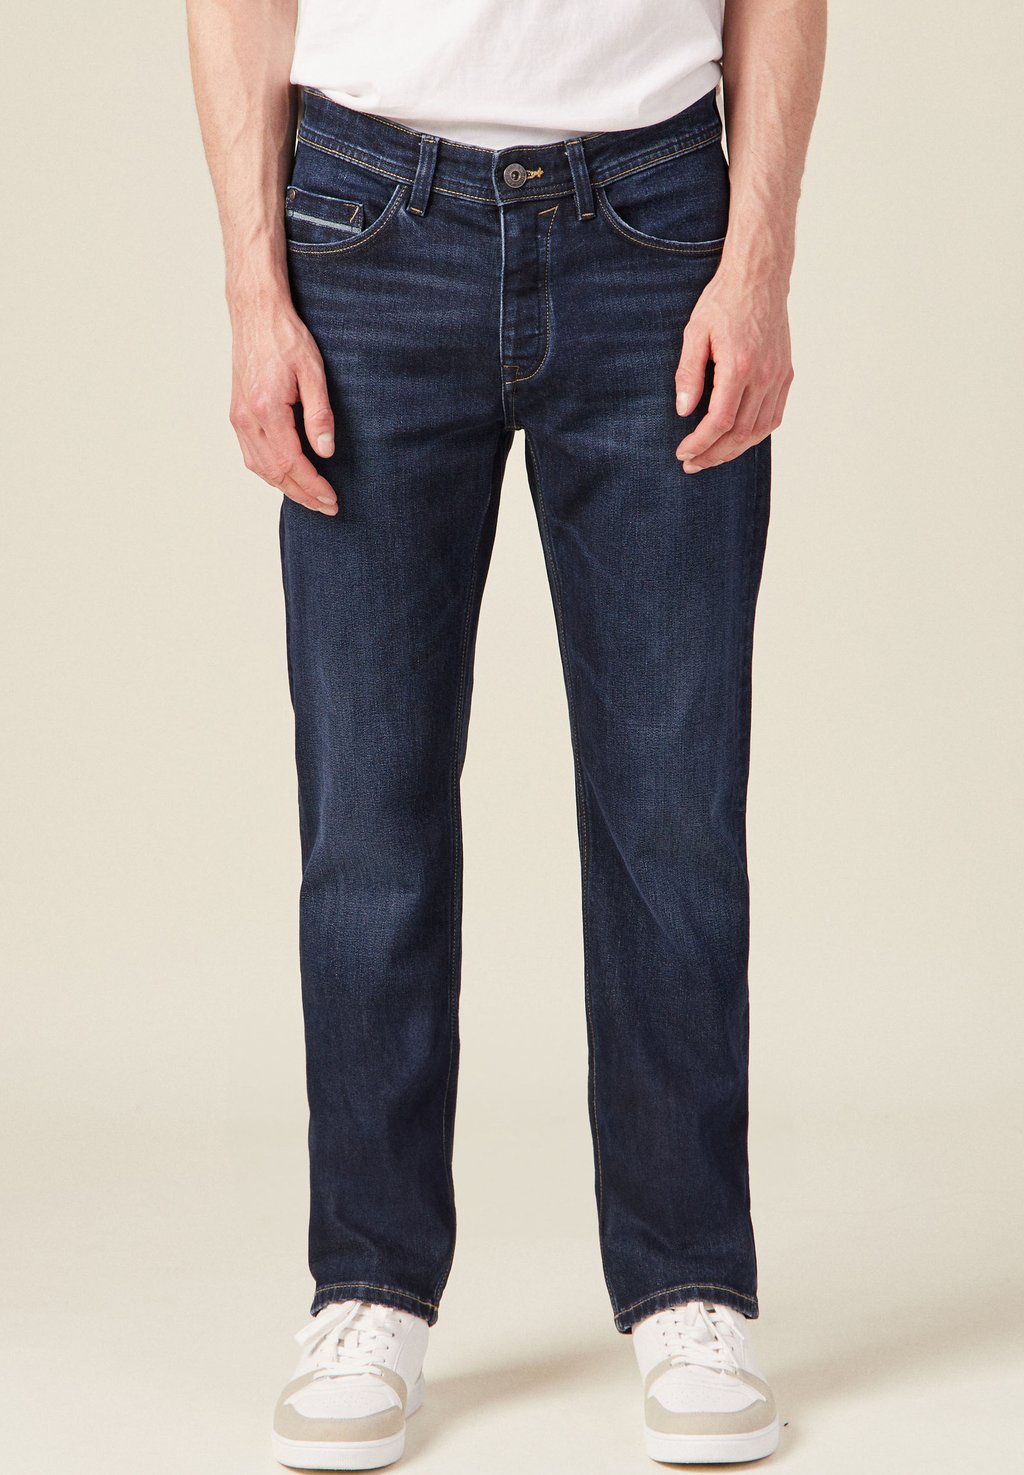 Прямые джинсы BONOBO Jeans, темно-синий джинсы прямые bonobo jeans цвет kaki